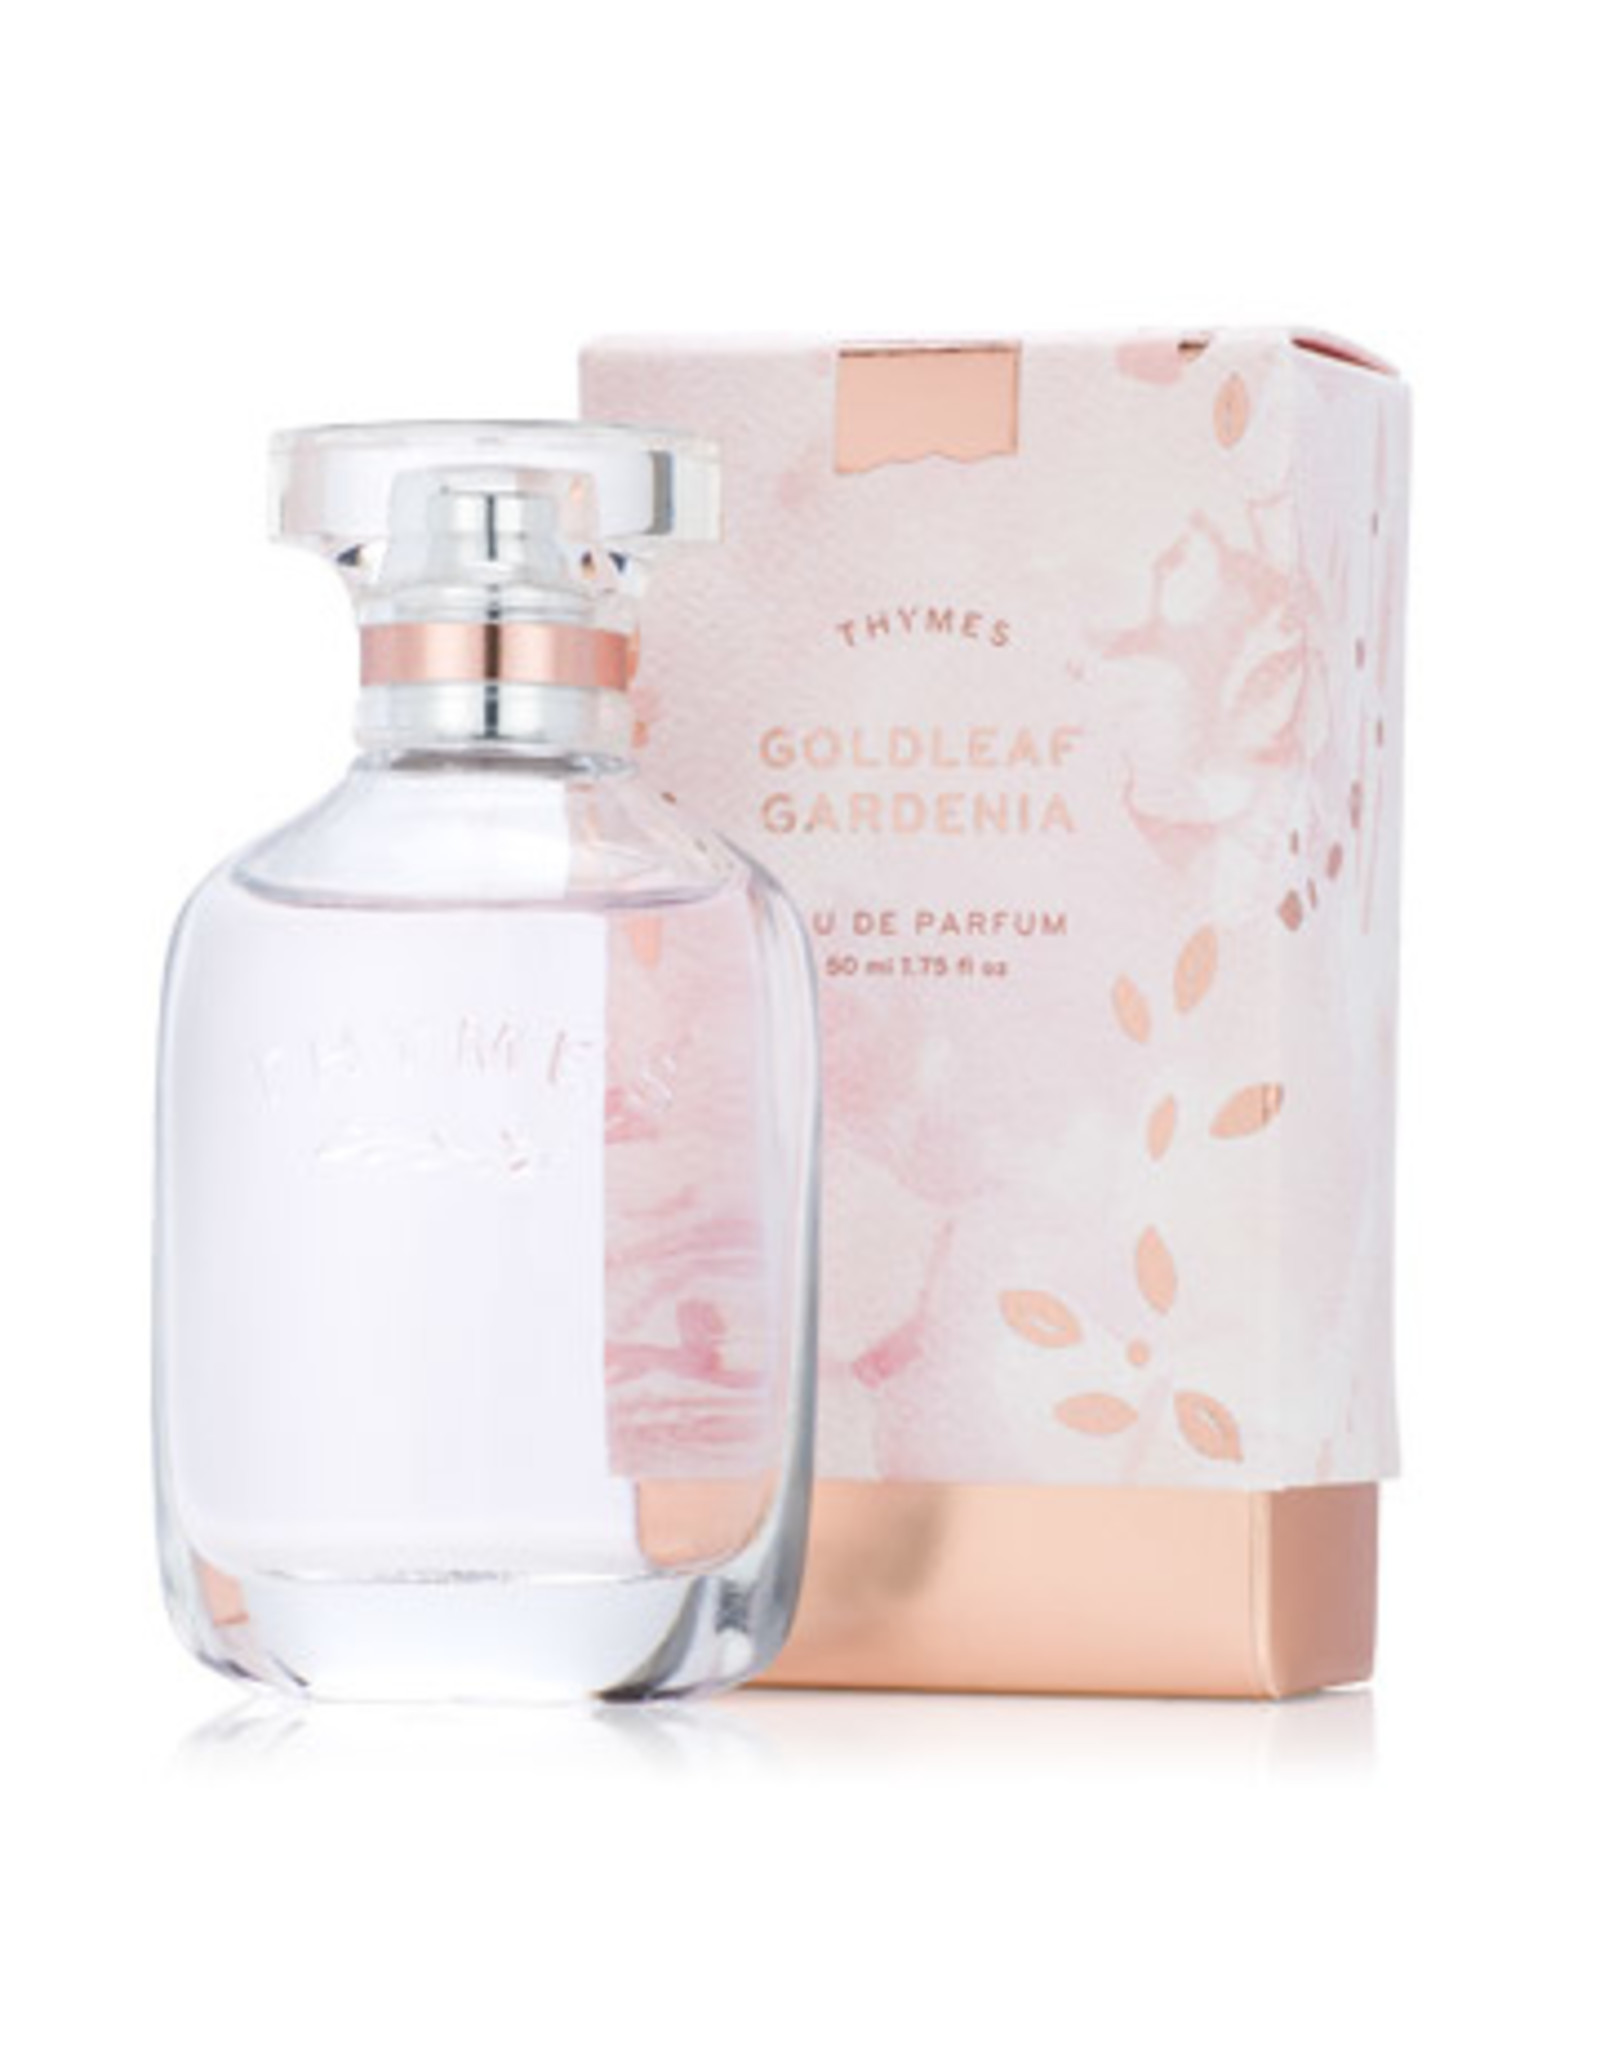 Thymes Goldleaf Gardenia Eau de Parfum 1.75 oz